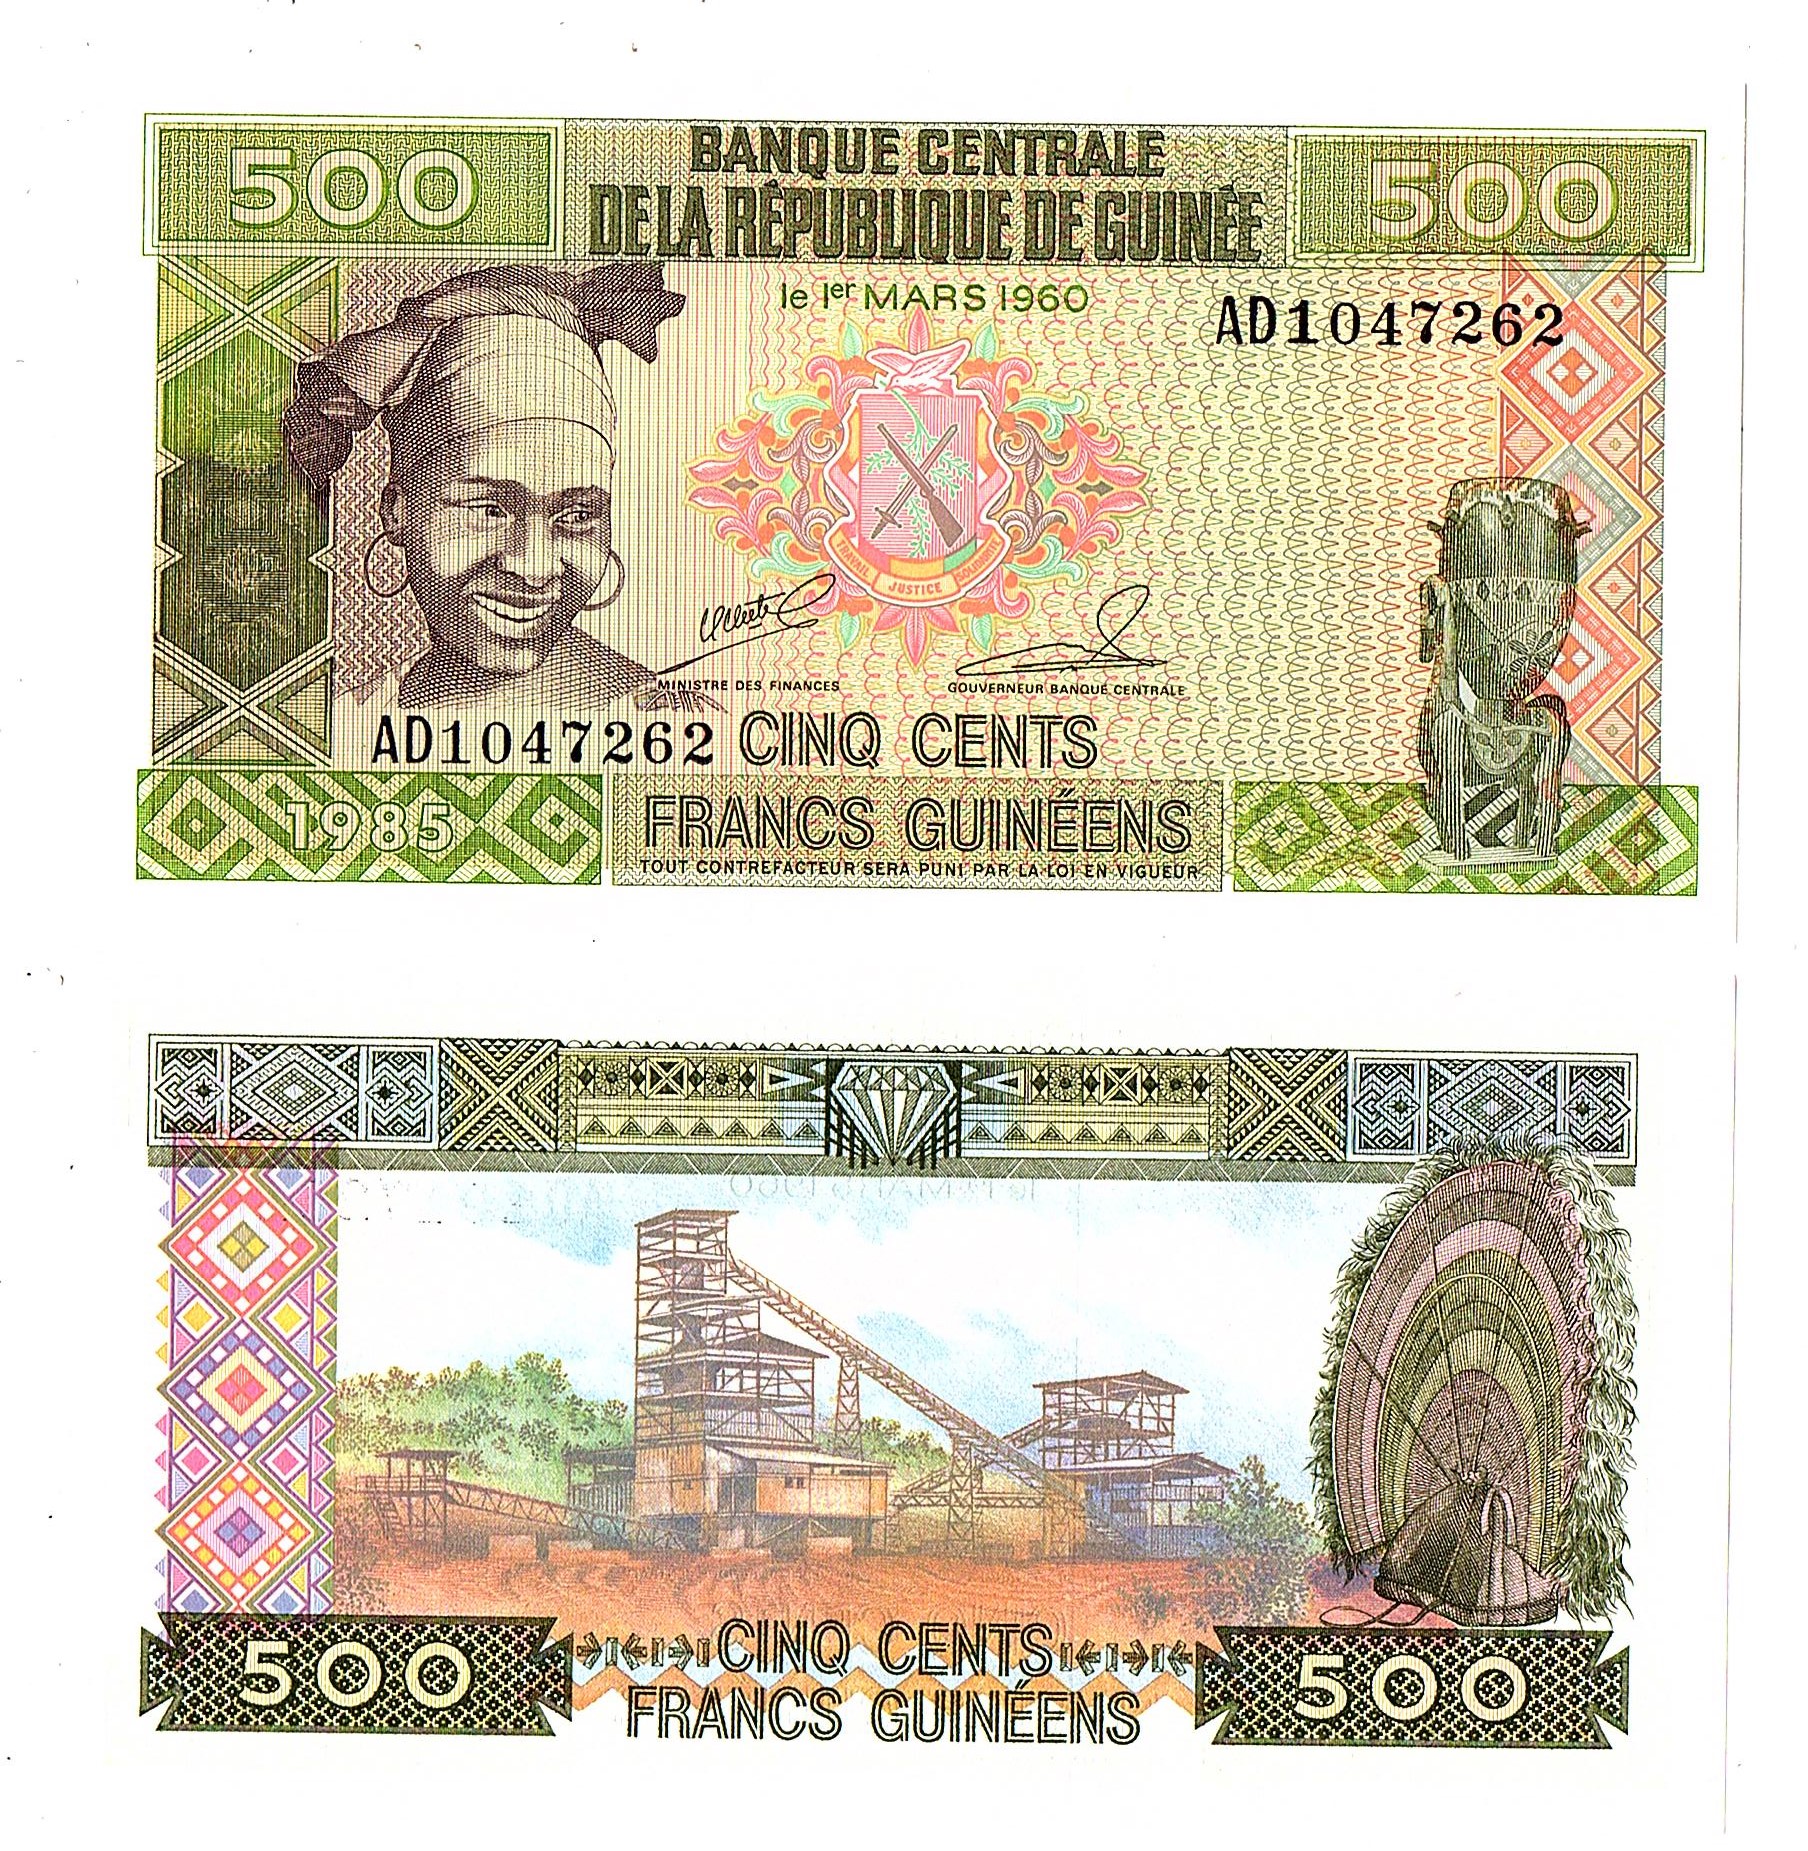 Guinea #31 500 Francs Guinéens